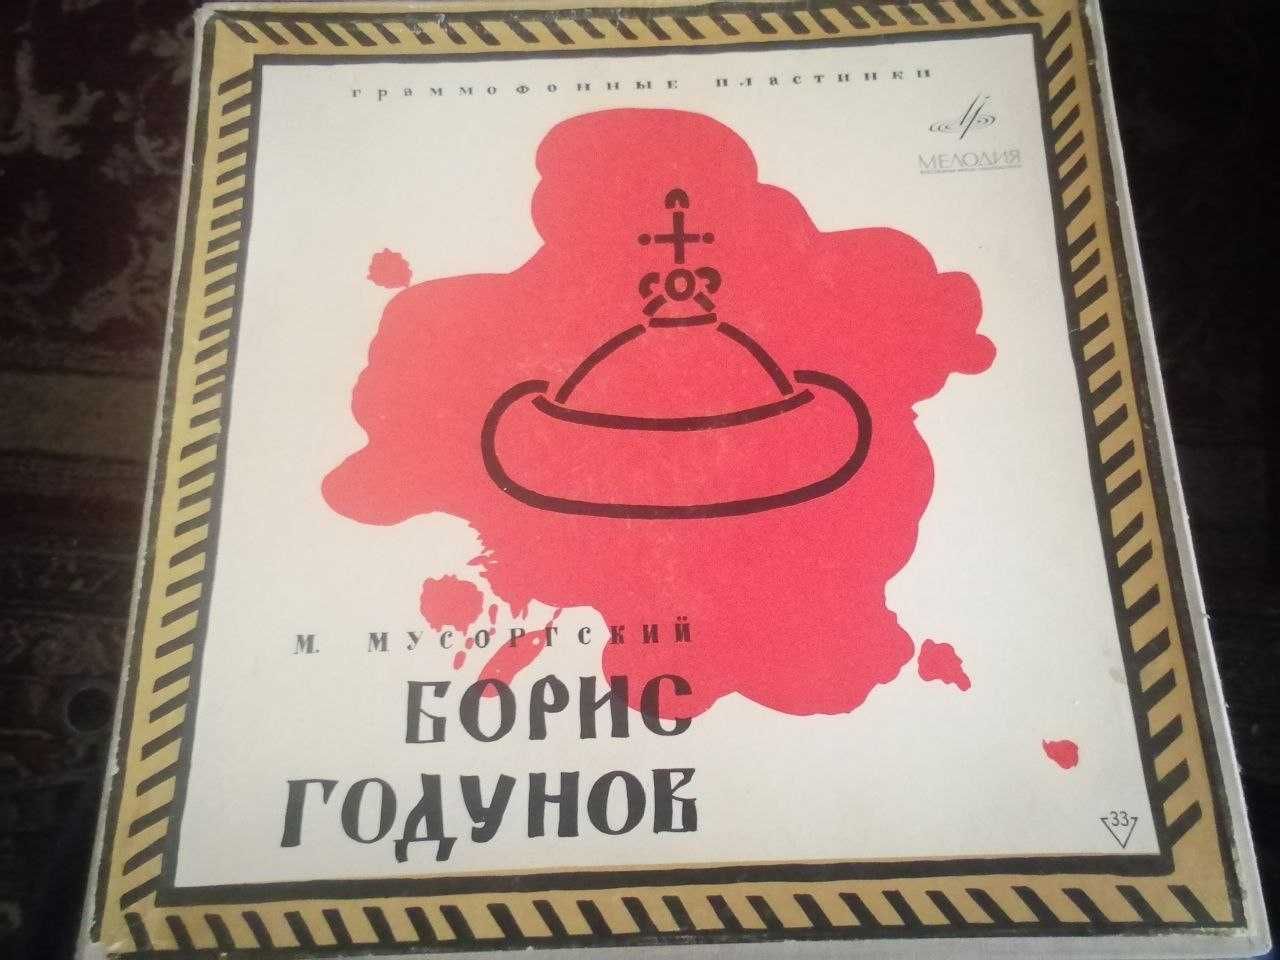 Грампластинки "Опера "Борис Годунов"  Мусоргского, 4 шт LP-Вох, 1965 г